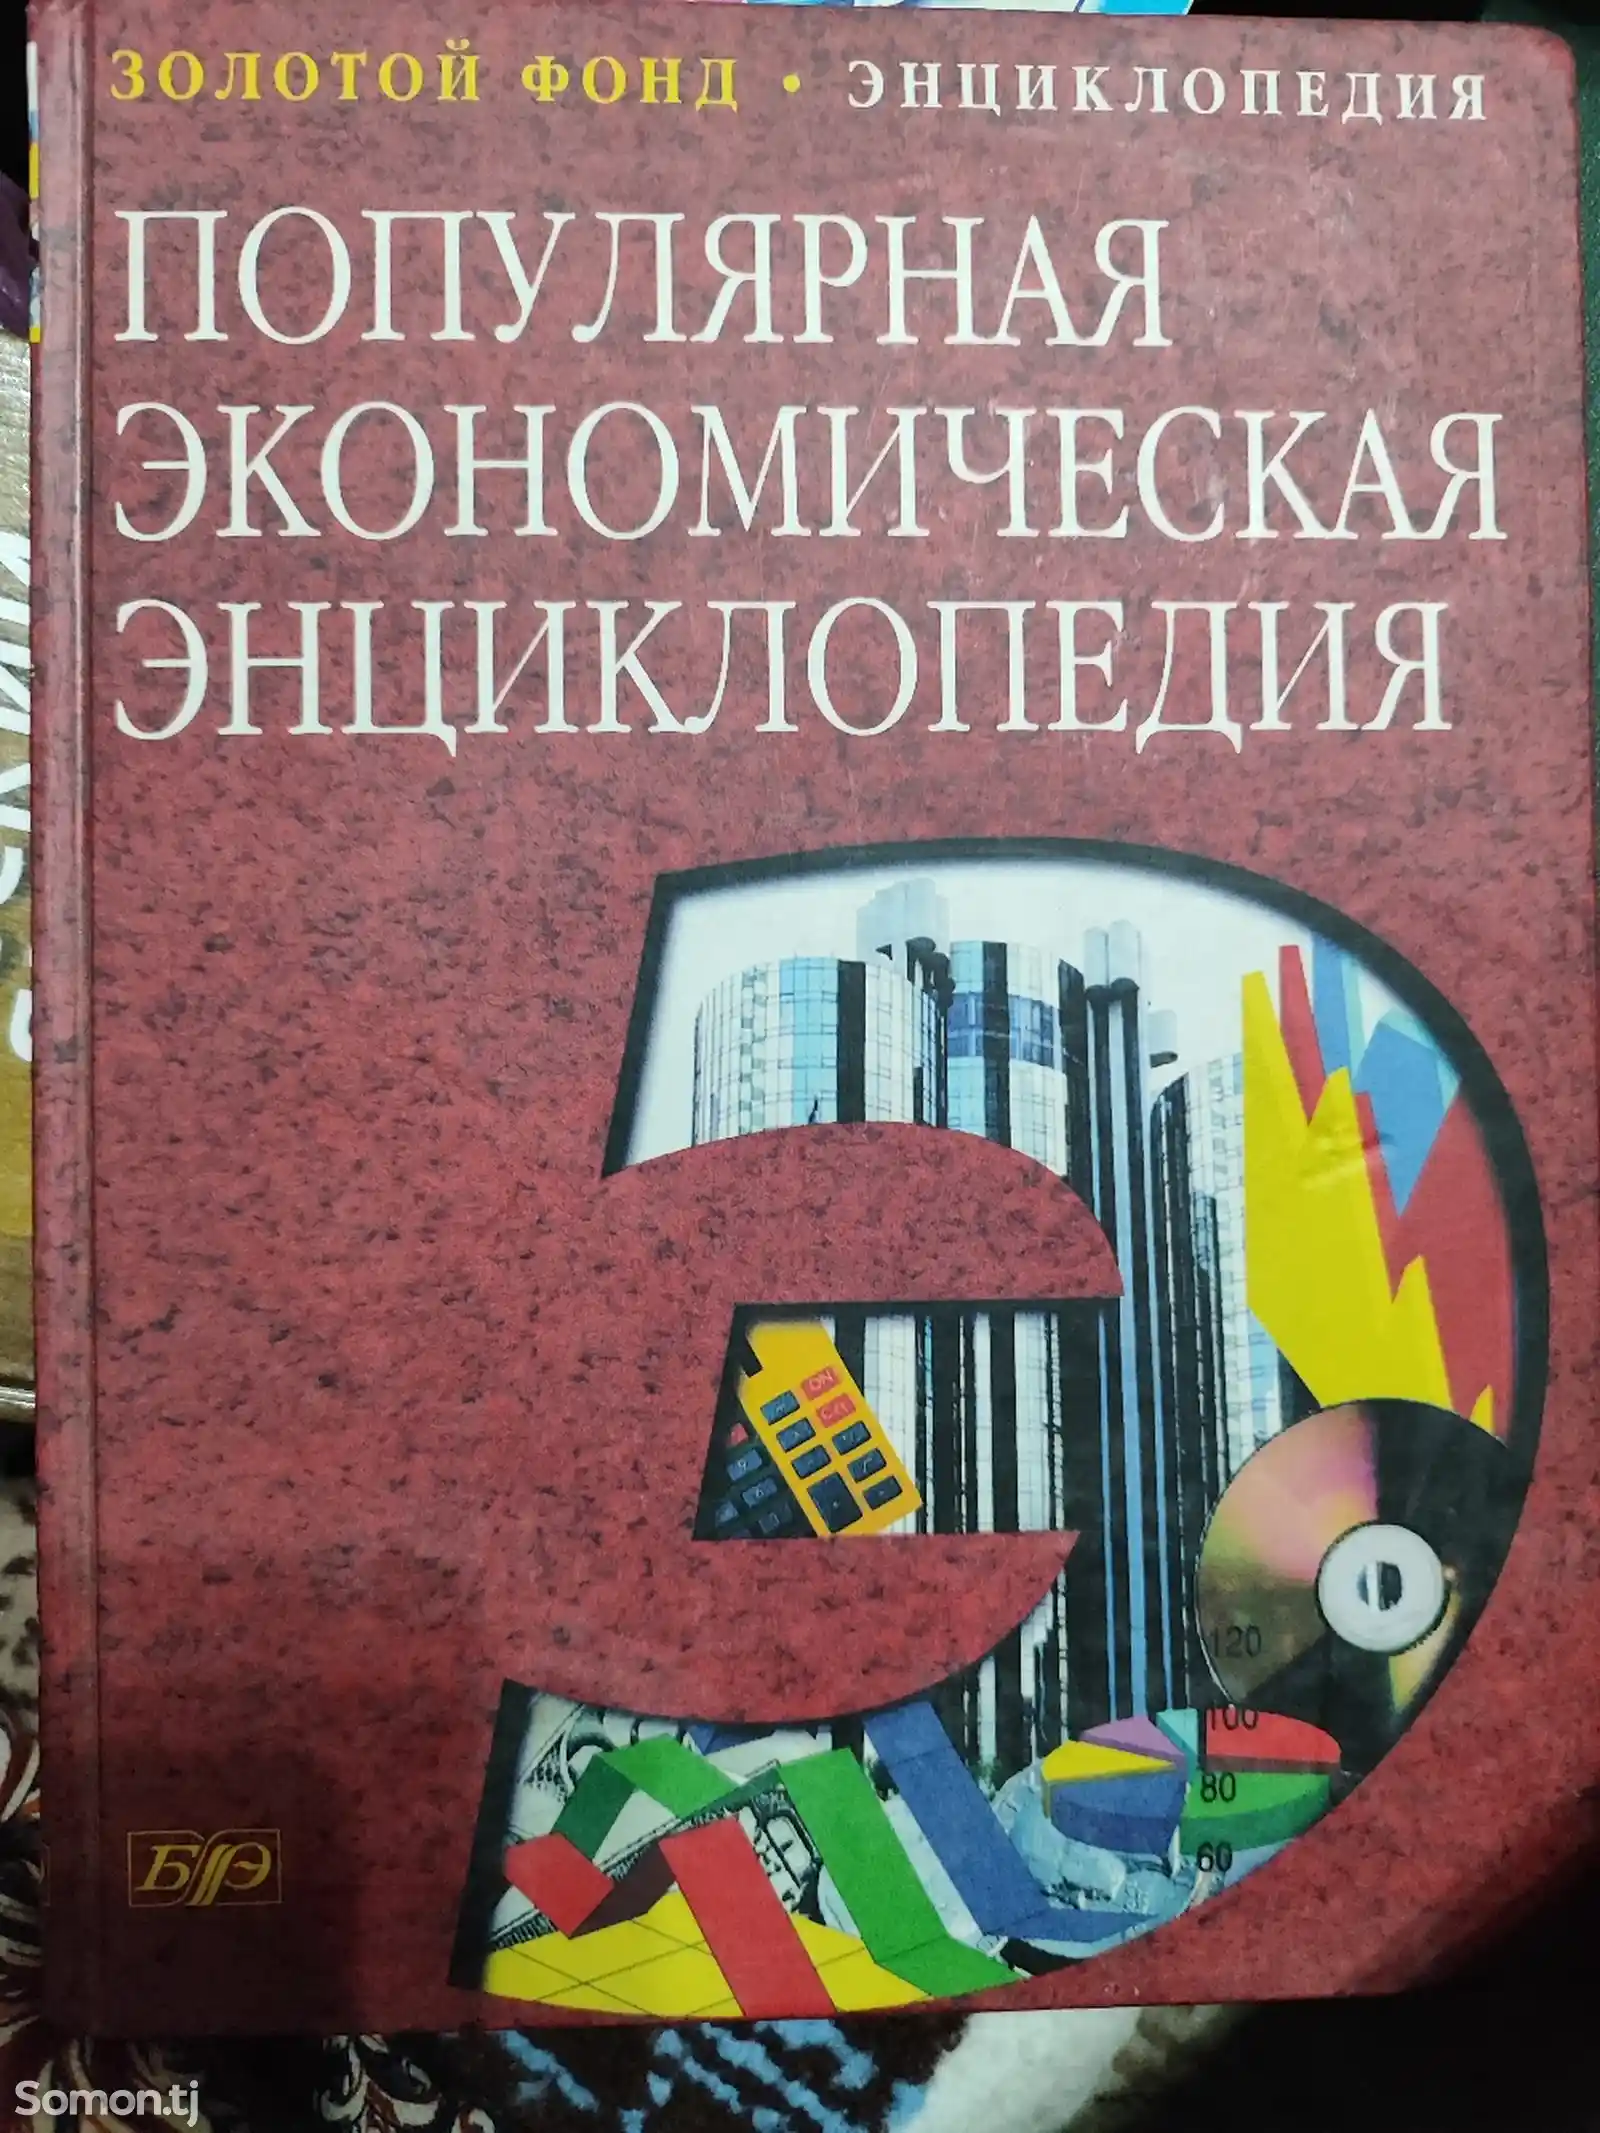 Книга Популярная экономическая энциклопедия,2003 год, 367 страниц-1